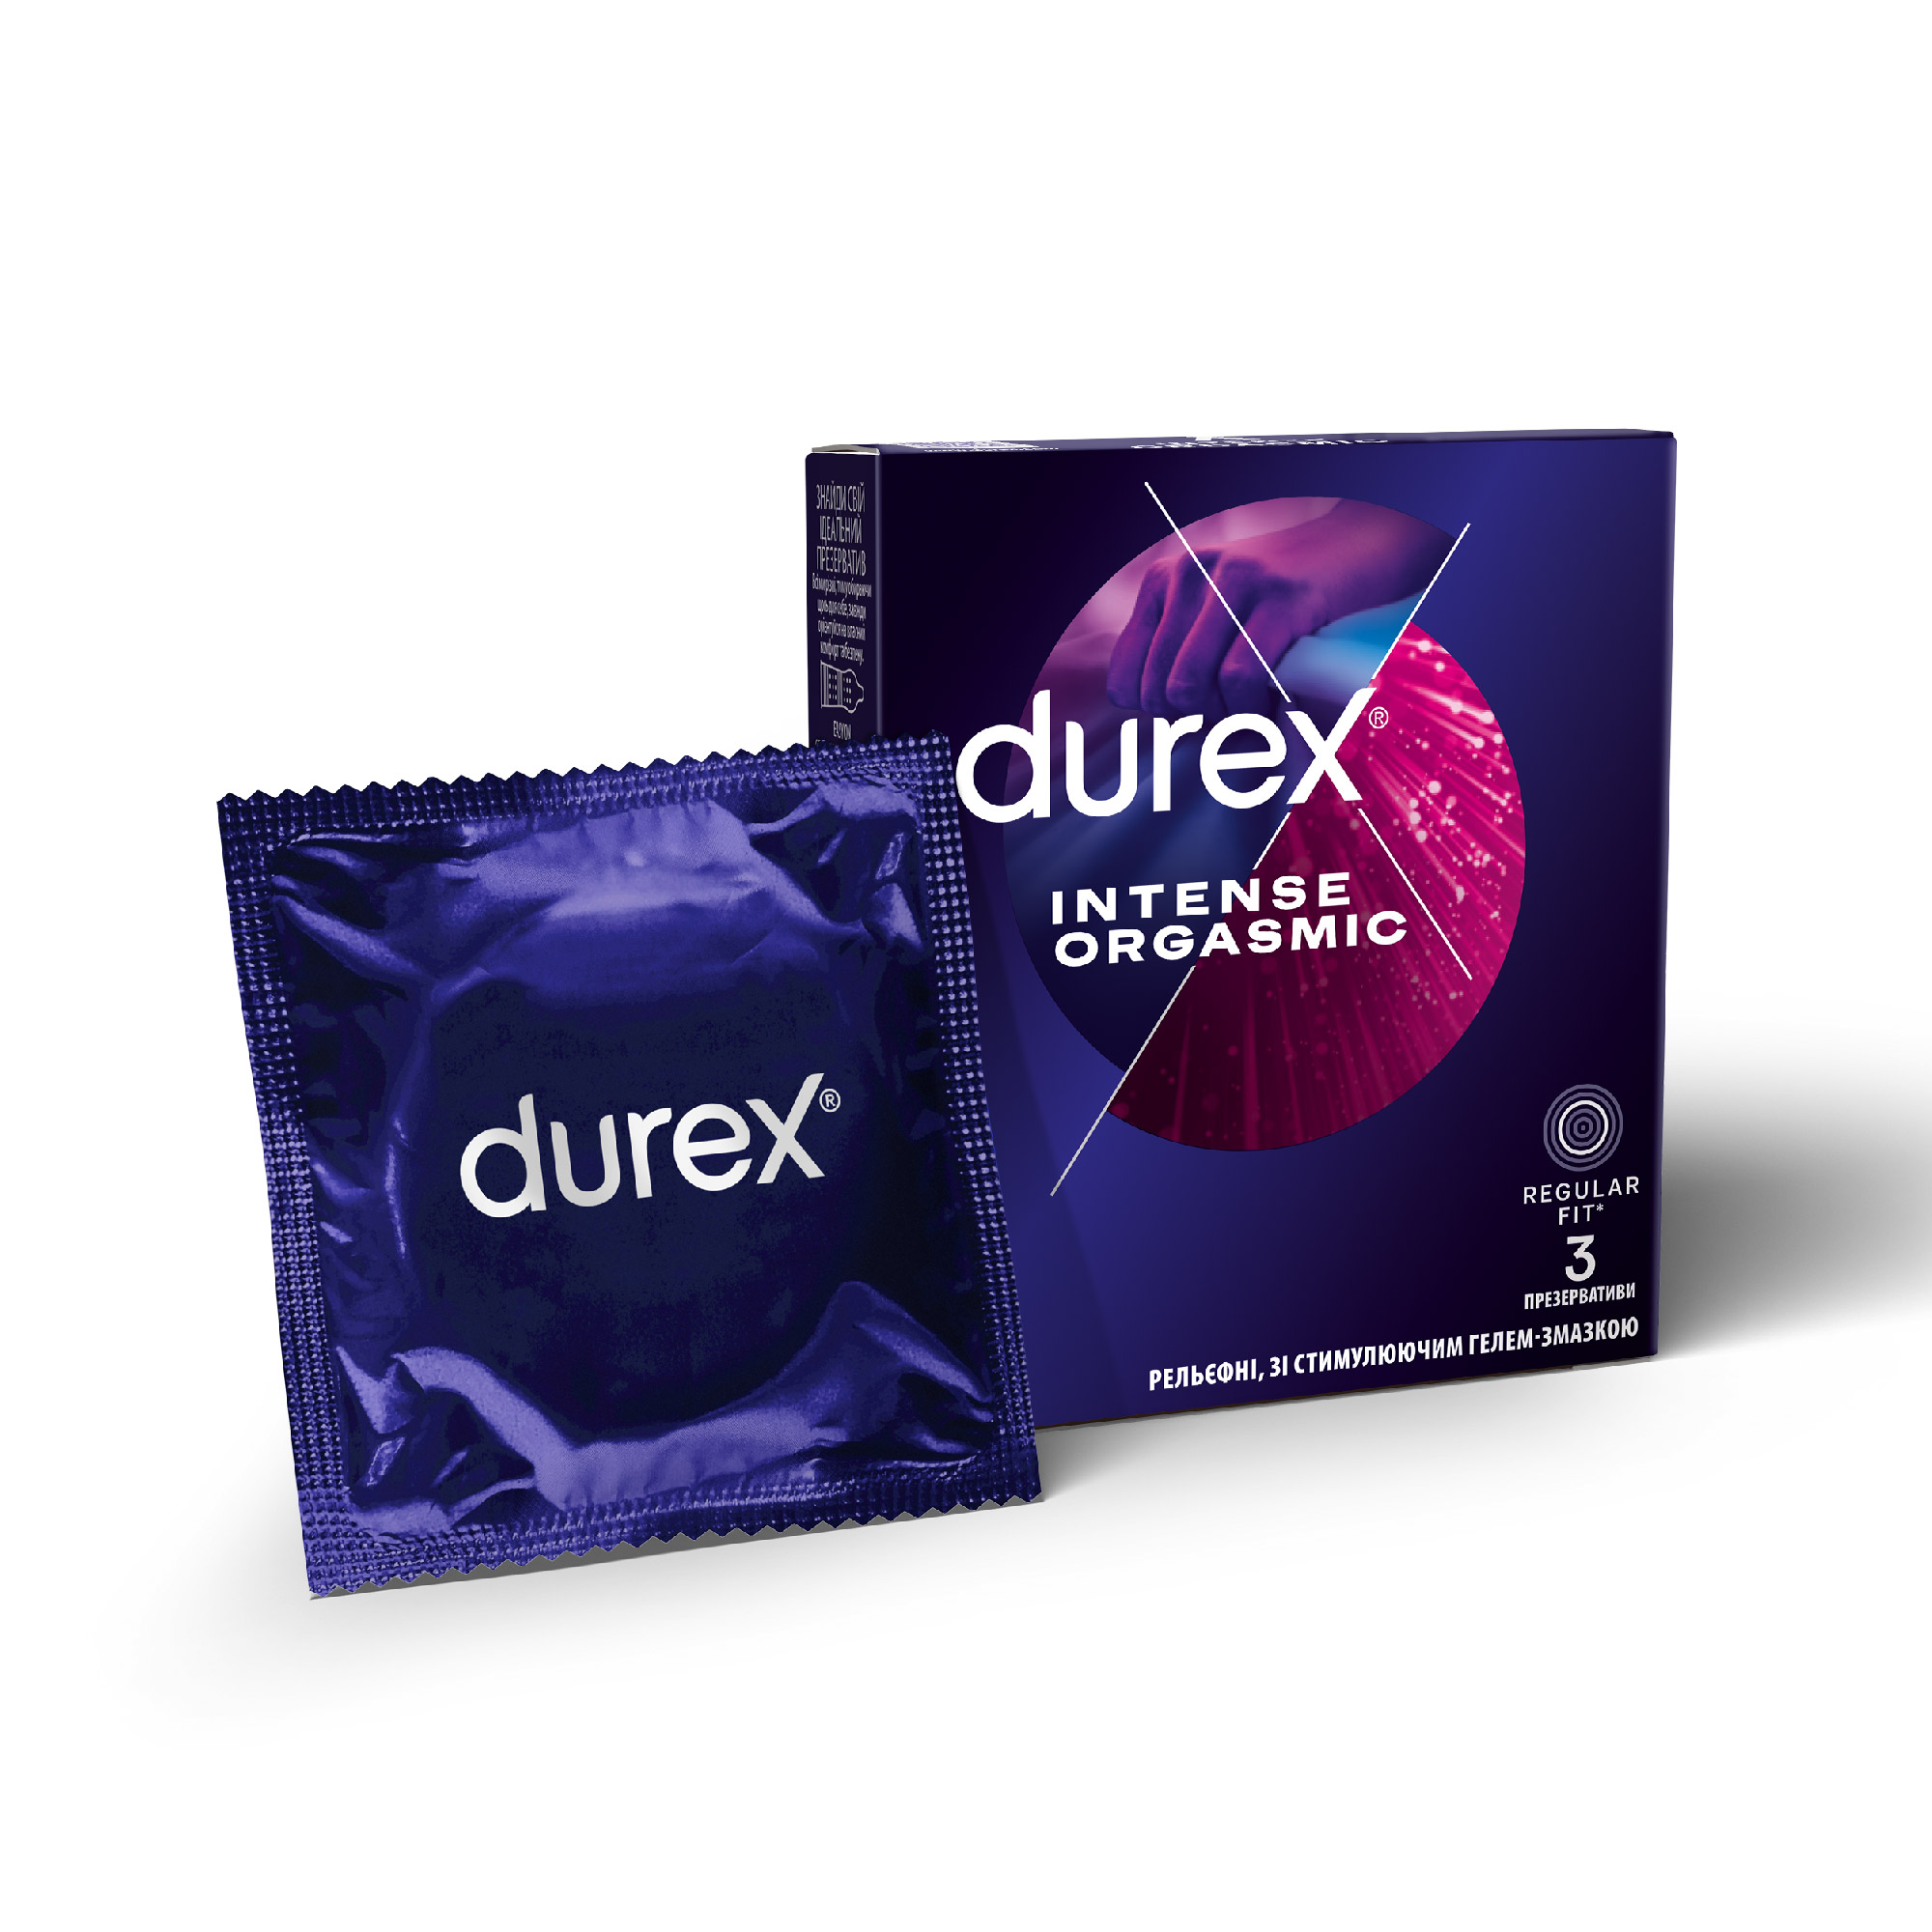 Презервативи Durex (Дюрекс) Intense Orgasmic рельєфні з стимулюючим гелем-змазкою для посилення оргазму, 3 шт.